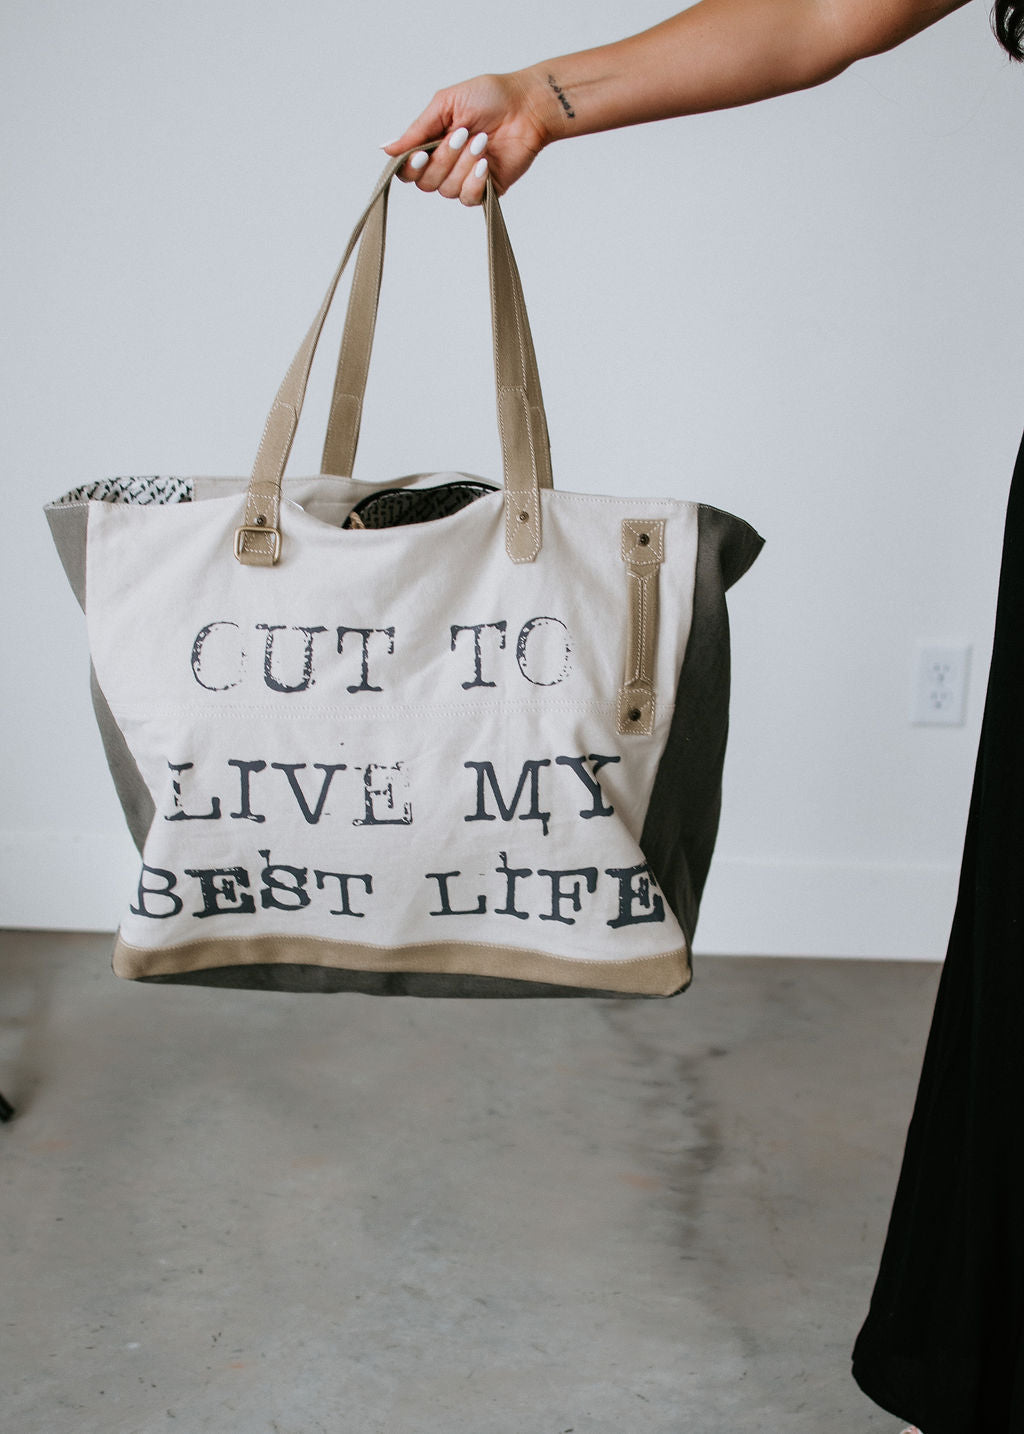 Best Life Tote Bag